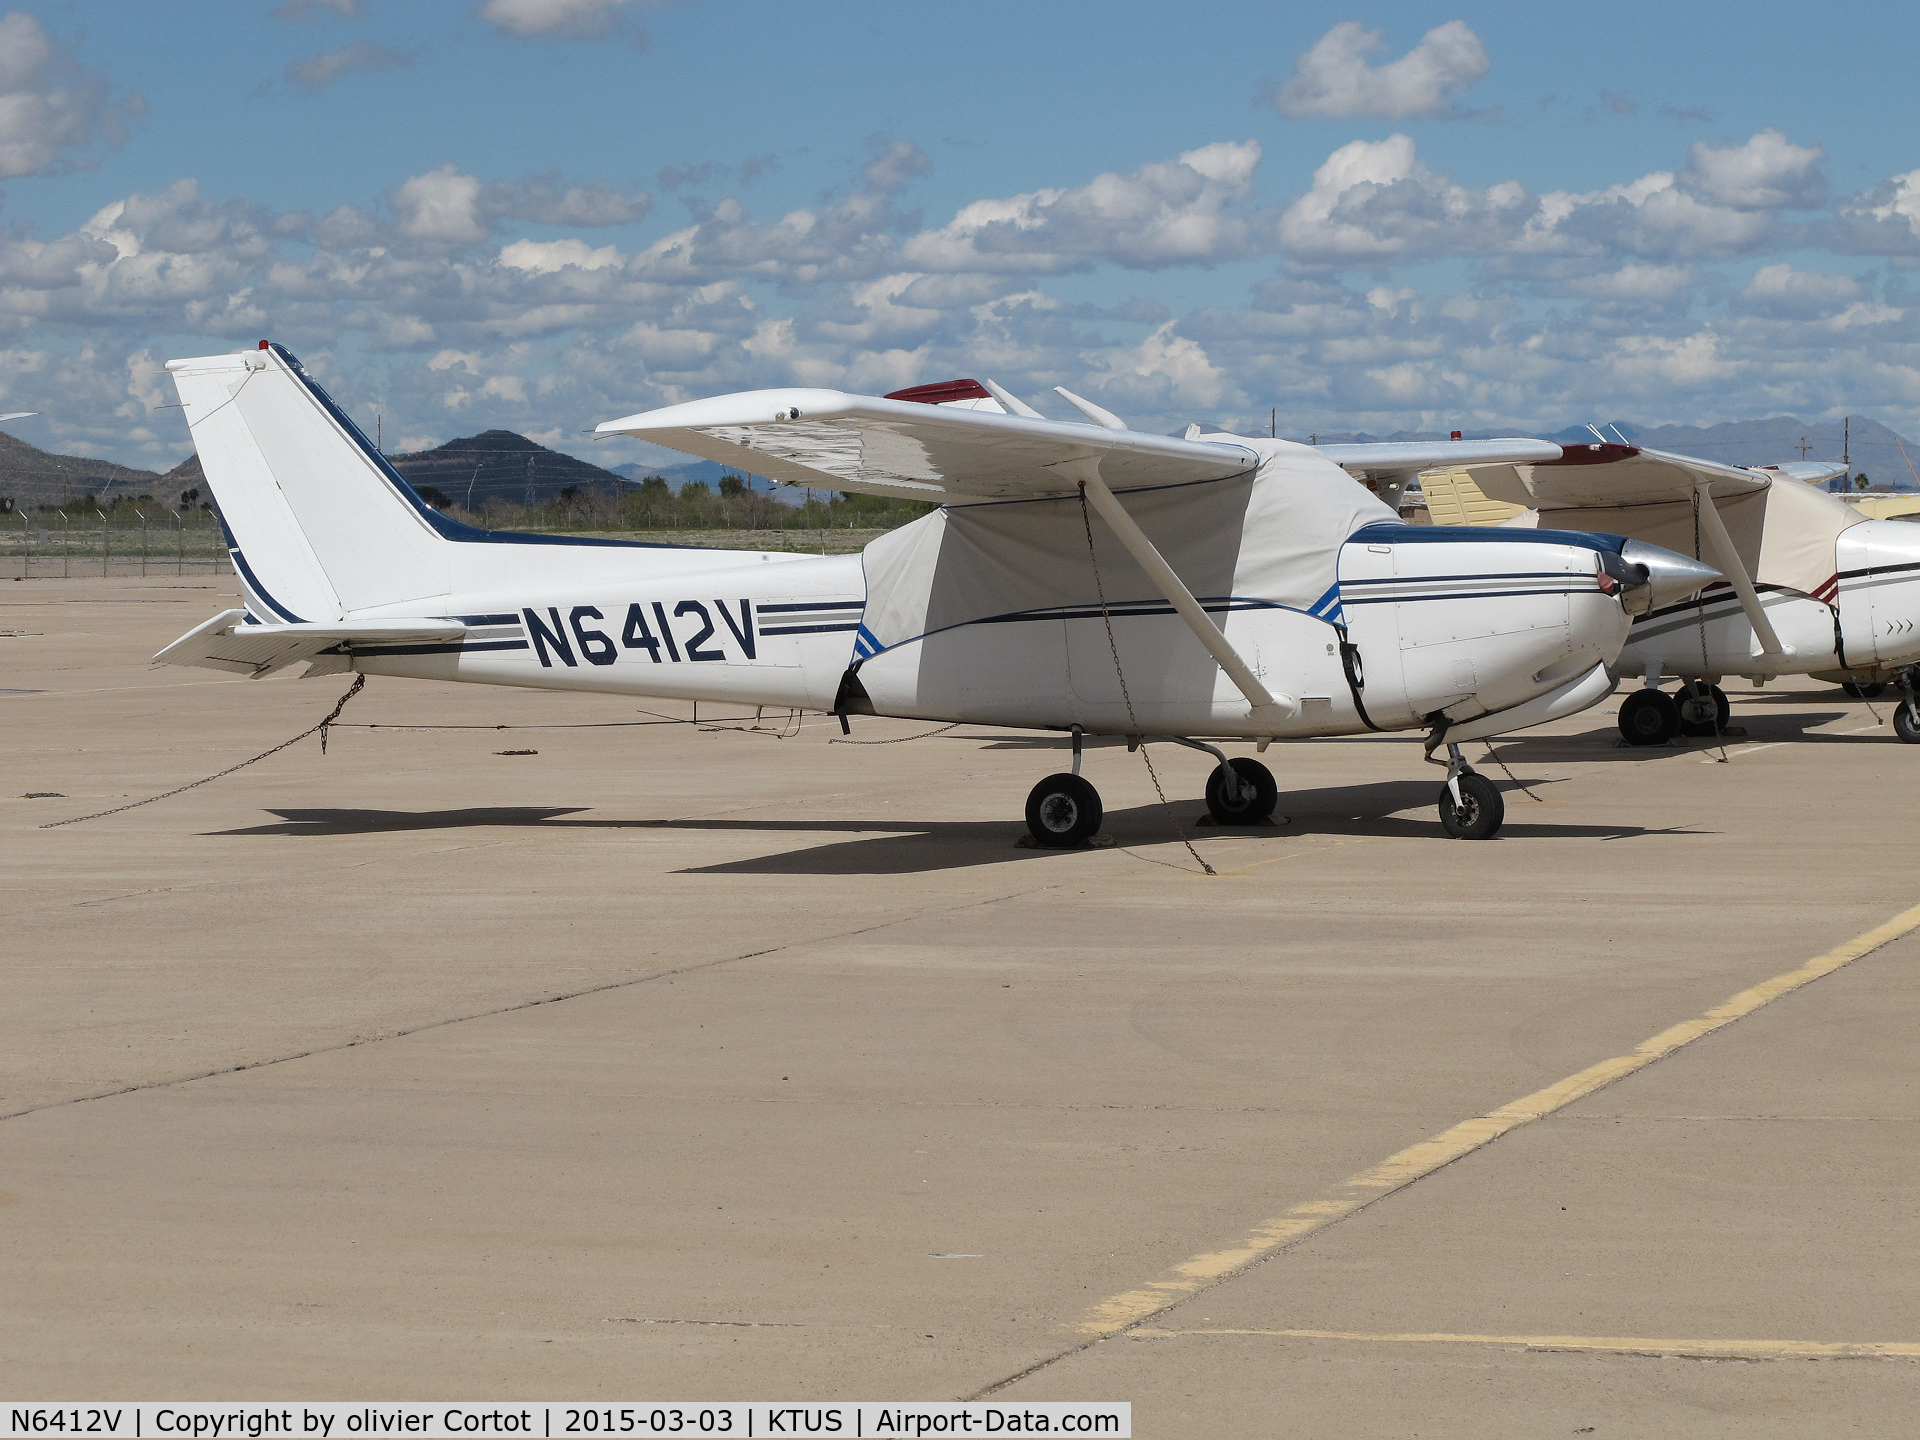 N6412V, 1980 Cessna 172RG Cutlass RG C/N 172RG0674, Tucson airport